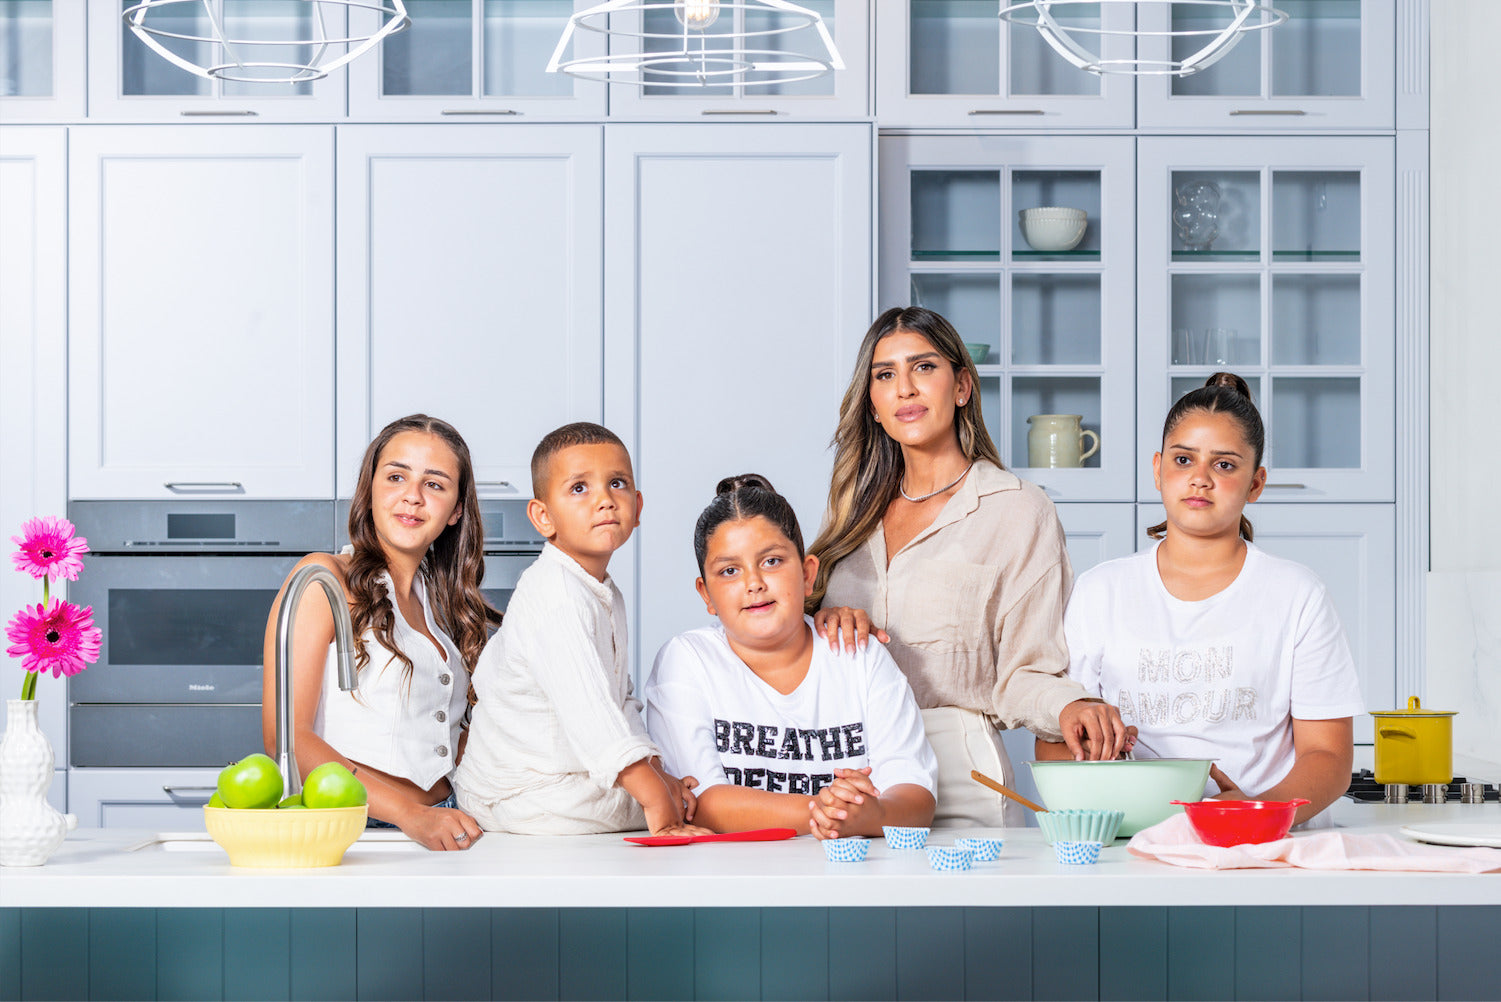 עינב והילדים שלה במטבח בצילומים לספר לכבוד שבת קודש